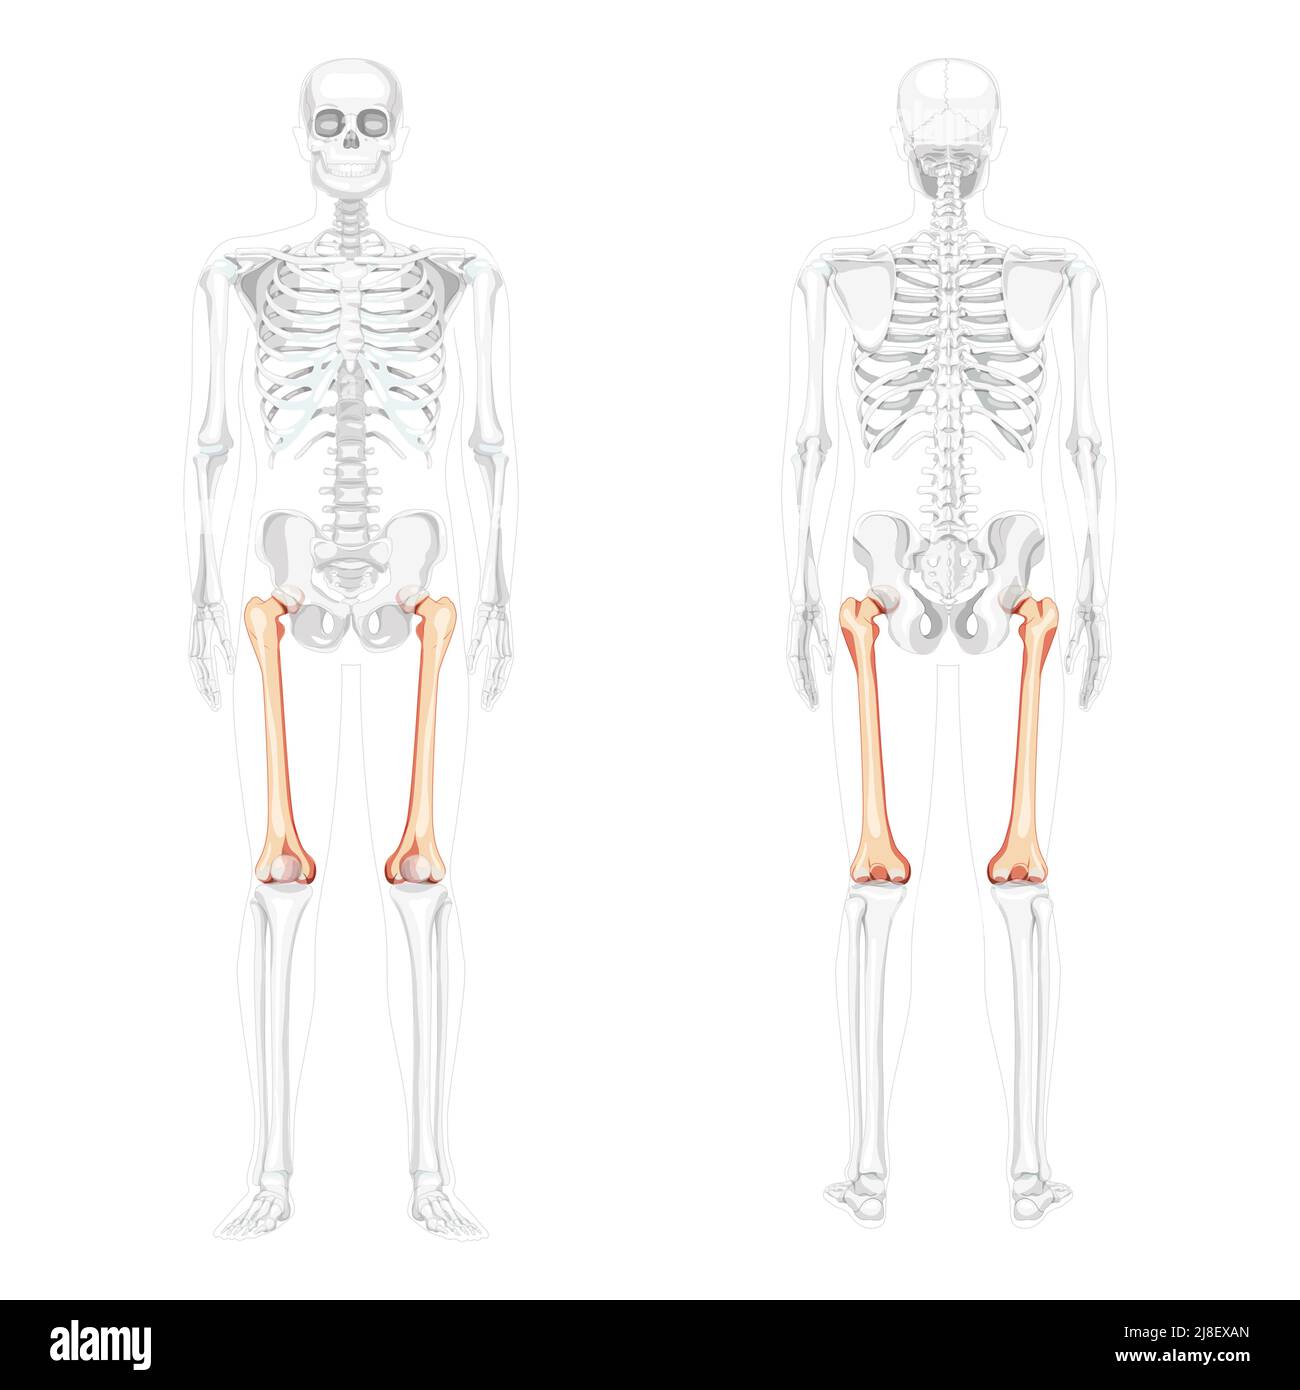 Scheletro femore coscia osso anteriore umano vista posteriore con posizione delle ossa parzialmente trasparente. Set di colori naturali piatti realistici immagine vettoriale dell'anatomia isolata su sfondo bianco Illustrazione Vettoriale